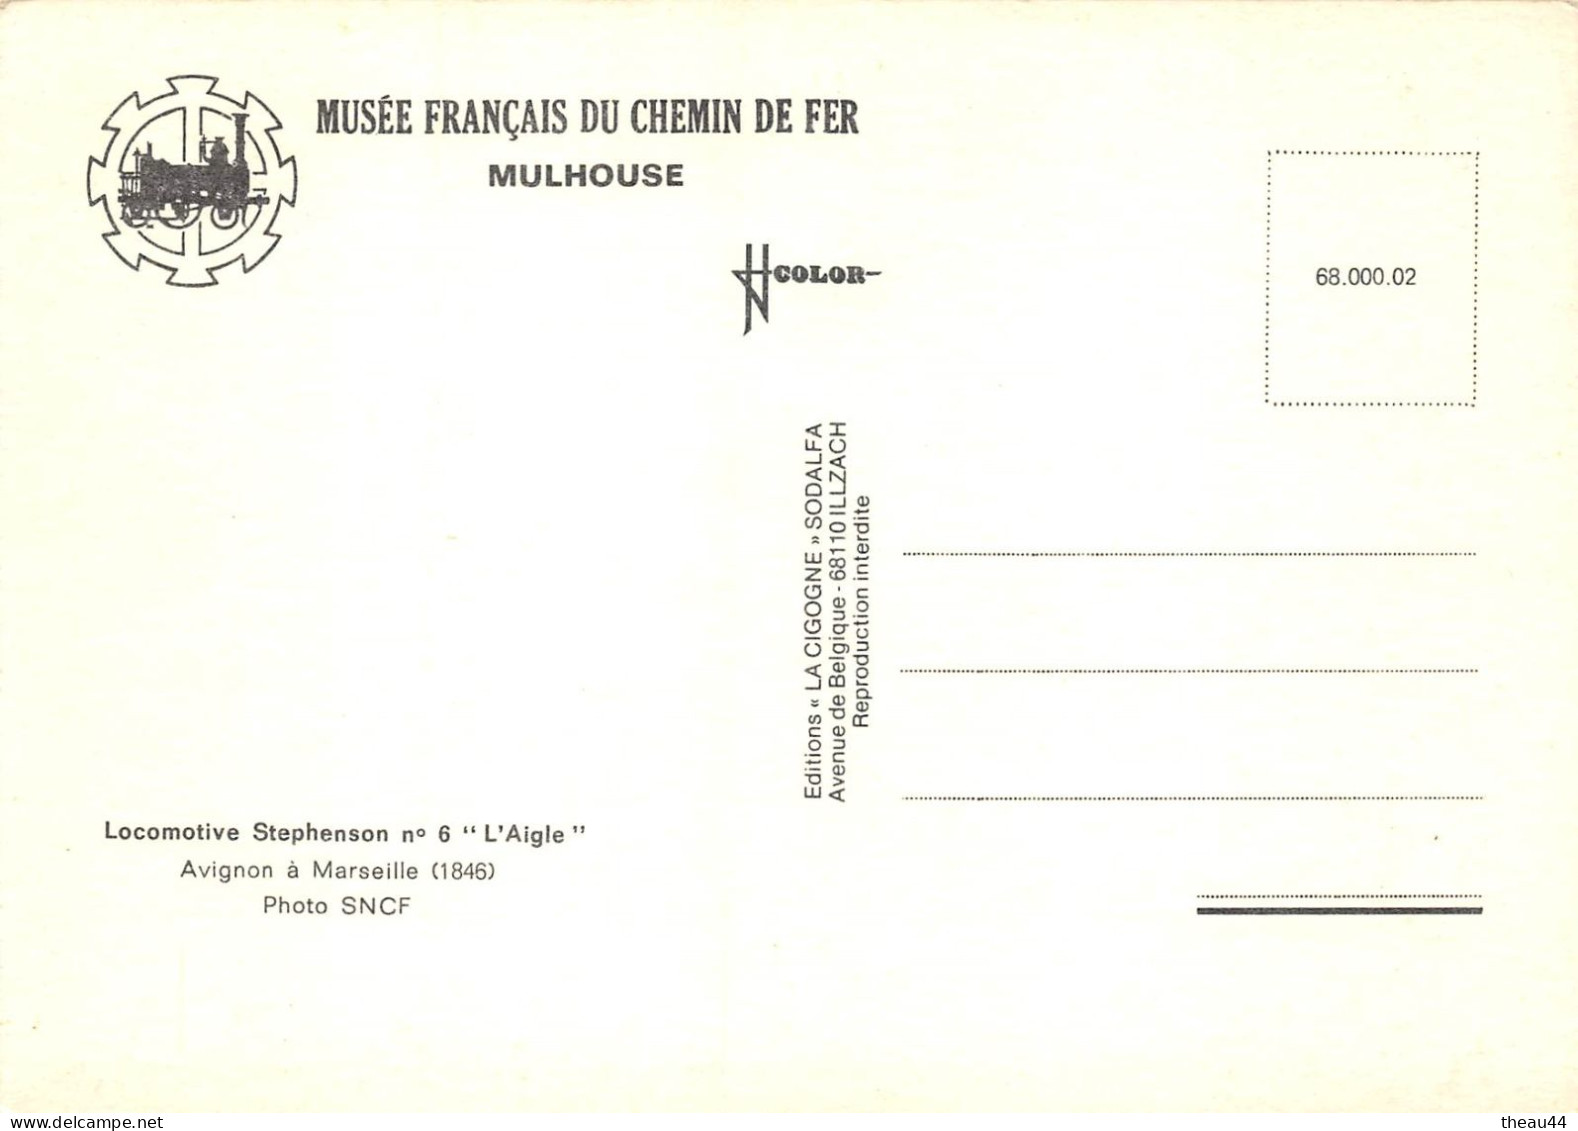 ¤¤   -   Lot de 10 Cartes du Musée Français du Chemin de Fer de MULHOUSE  -  Locomotives, Wagons, Trains   -   ¤¤